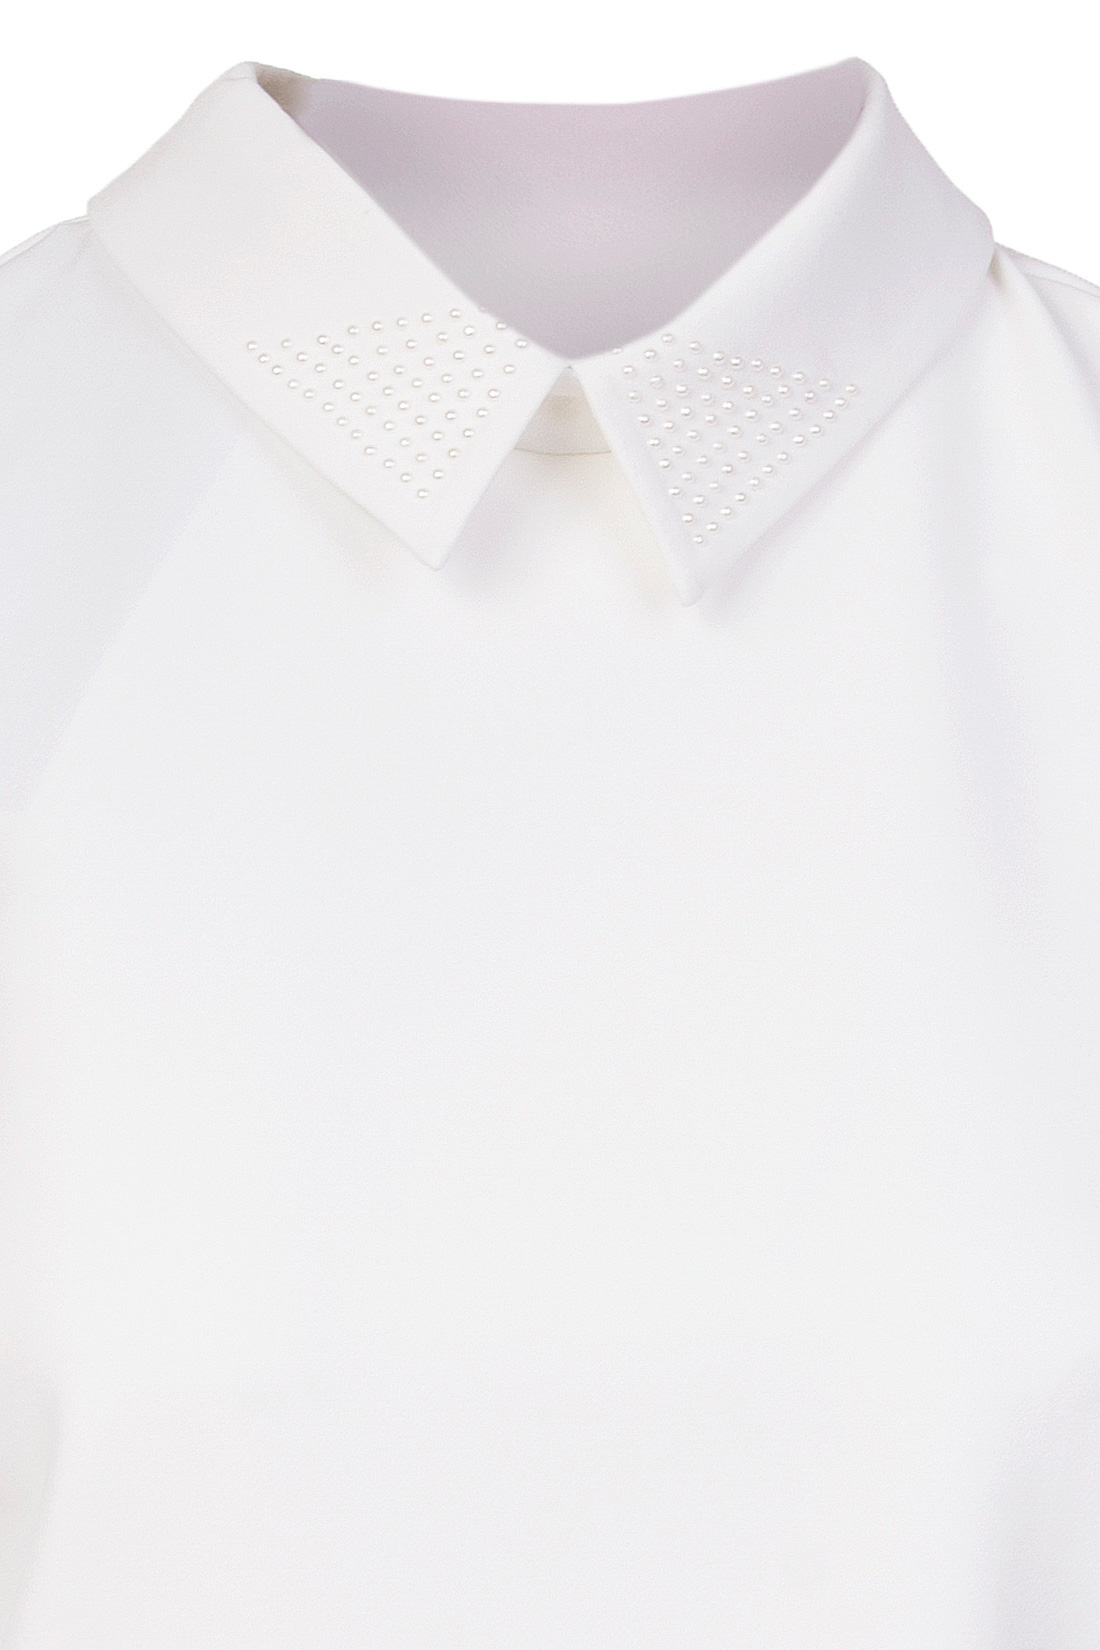 Блузка с жемчужным воротником (арт. baon B197007), размер XS, цвет белый Блузка с жемчужным воротником (арт. baon B197007) - фото 3